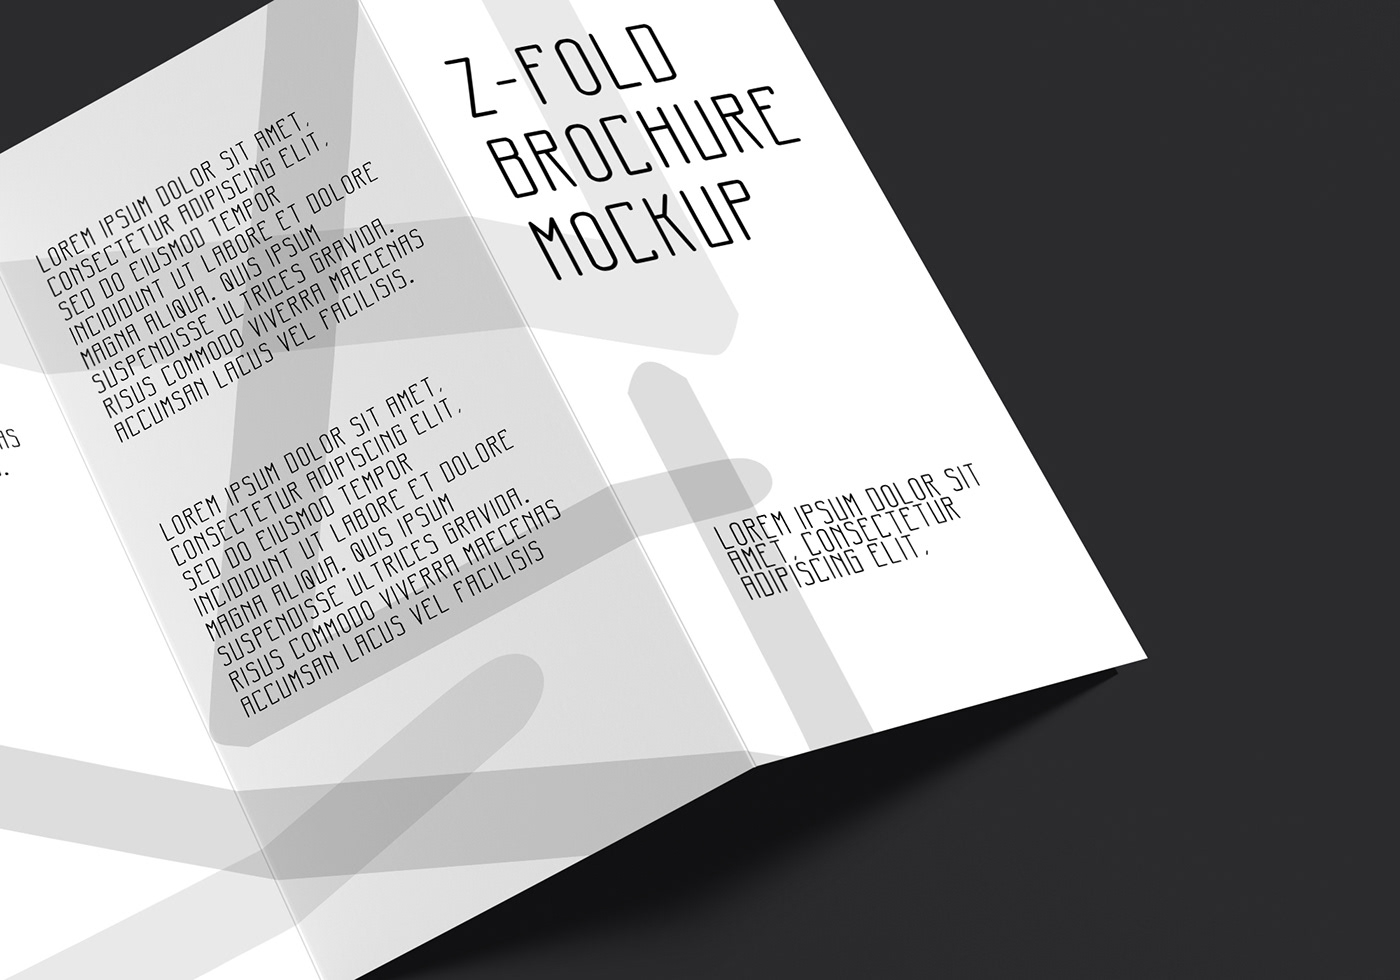 brochure high resolution Mockup z-fold zfold